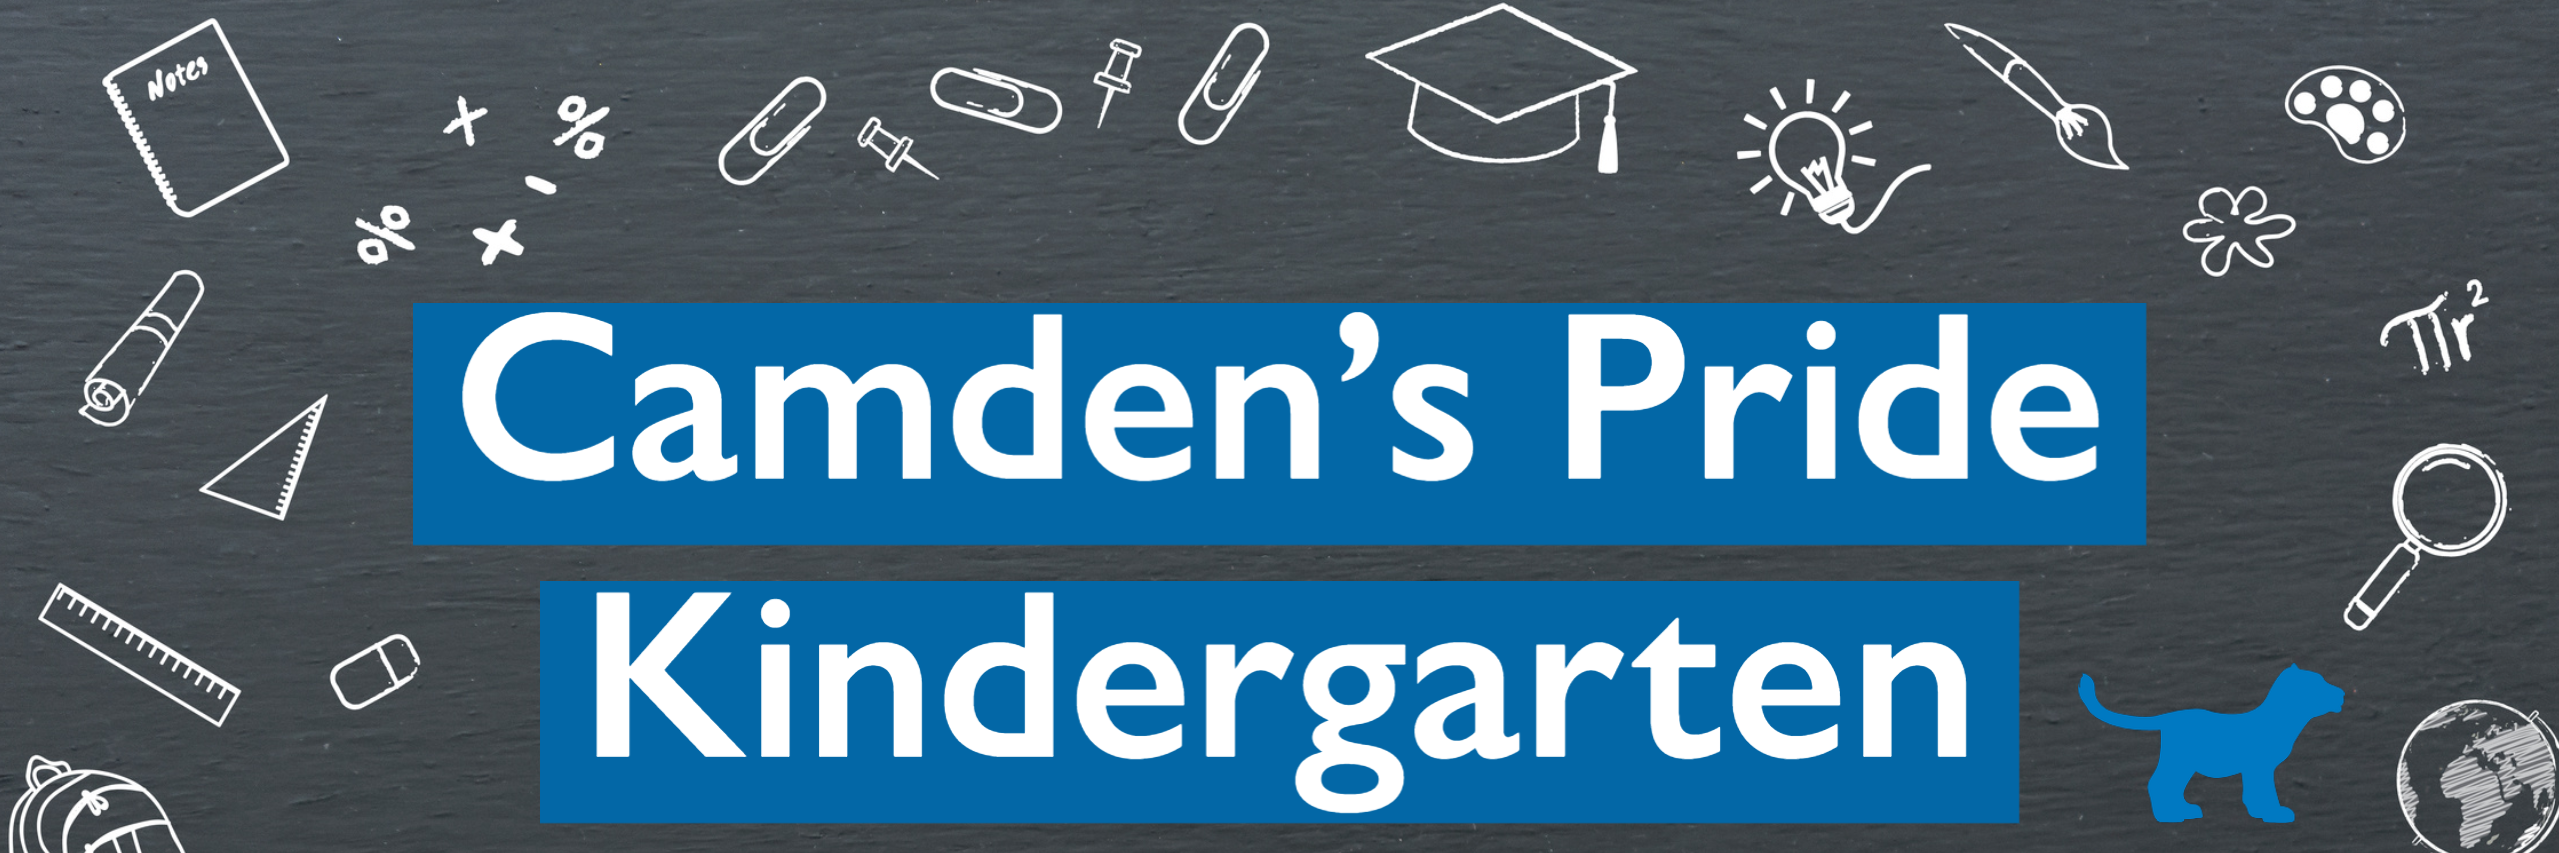 Camden's Pride Kindergarten